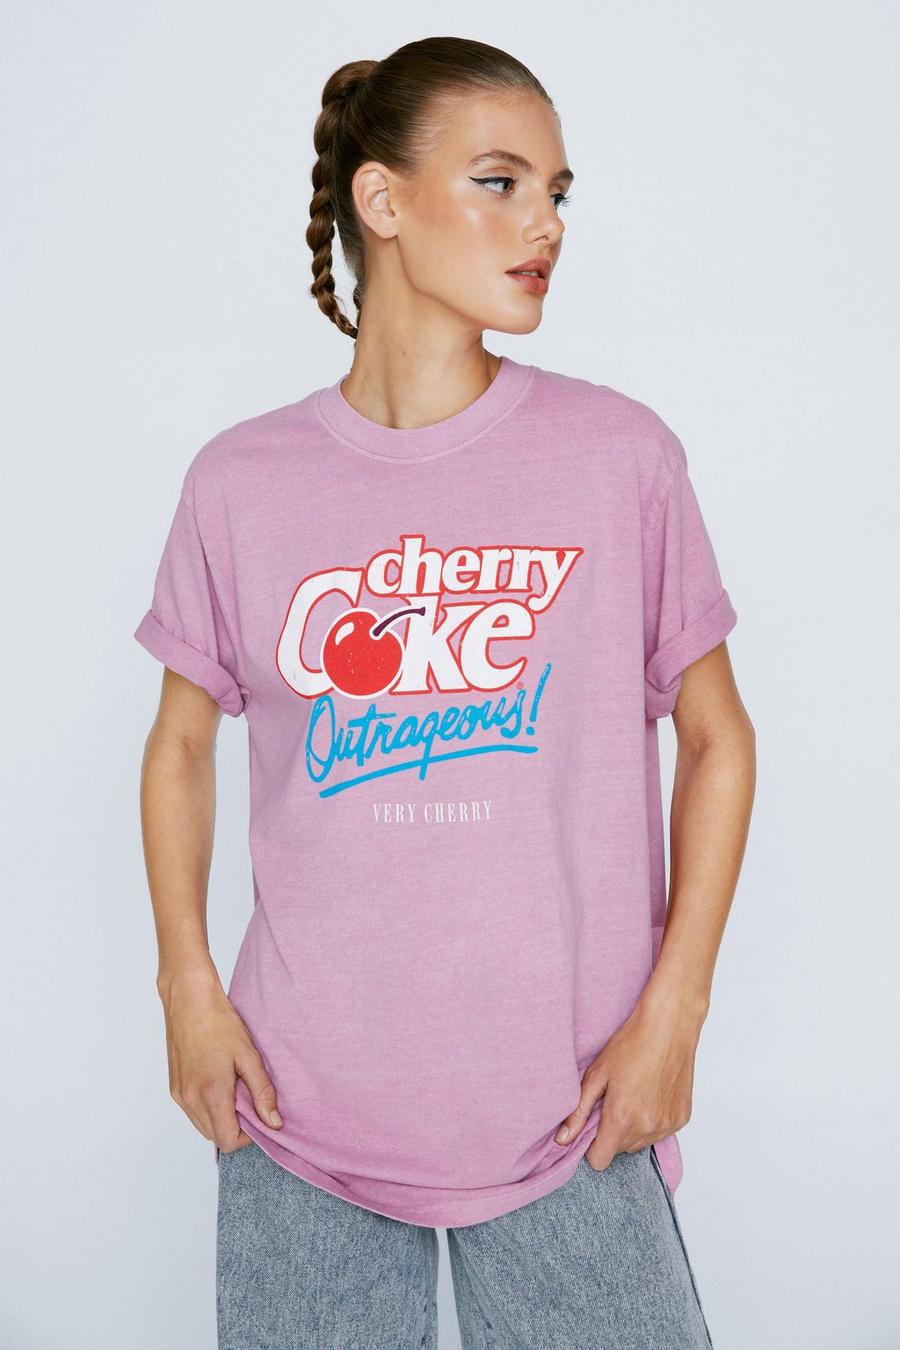 Cherry Coke Graphic Oversized T-Shirt